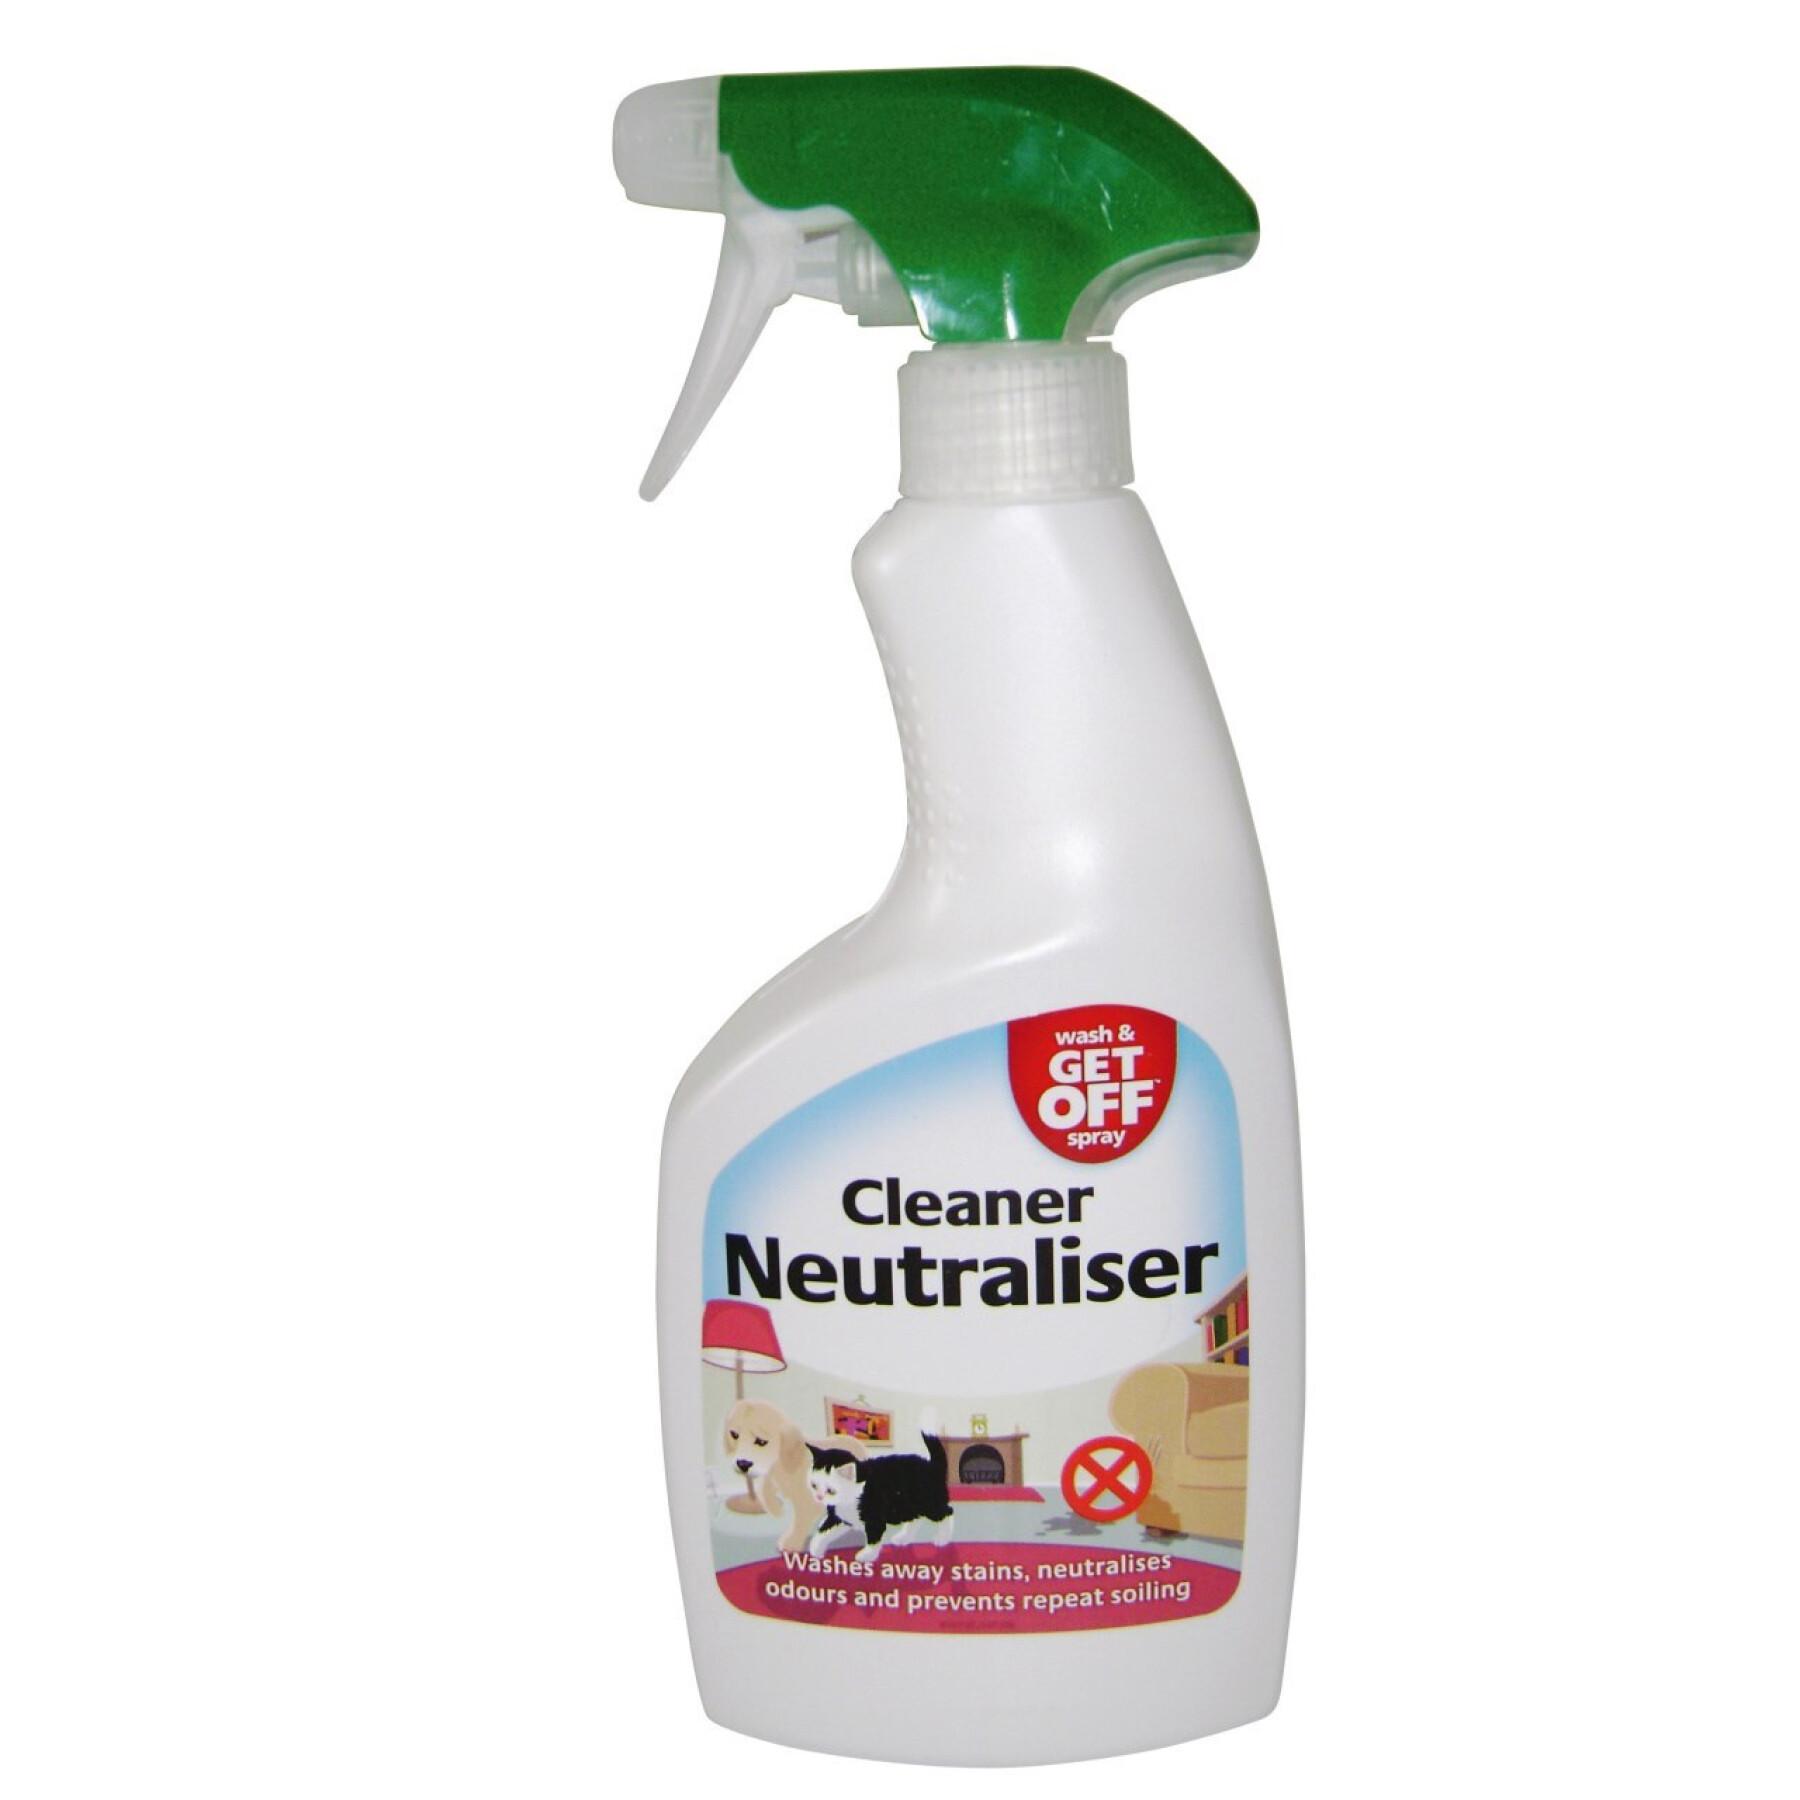 Reinigende/neutraliserende spray Kerbl Spray Wash and Get Off